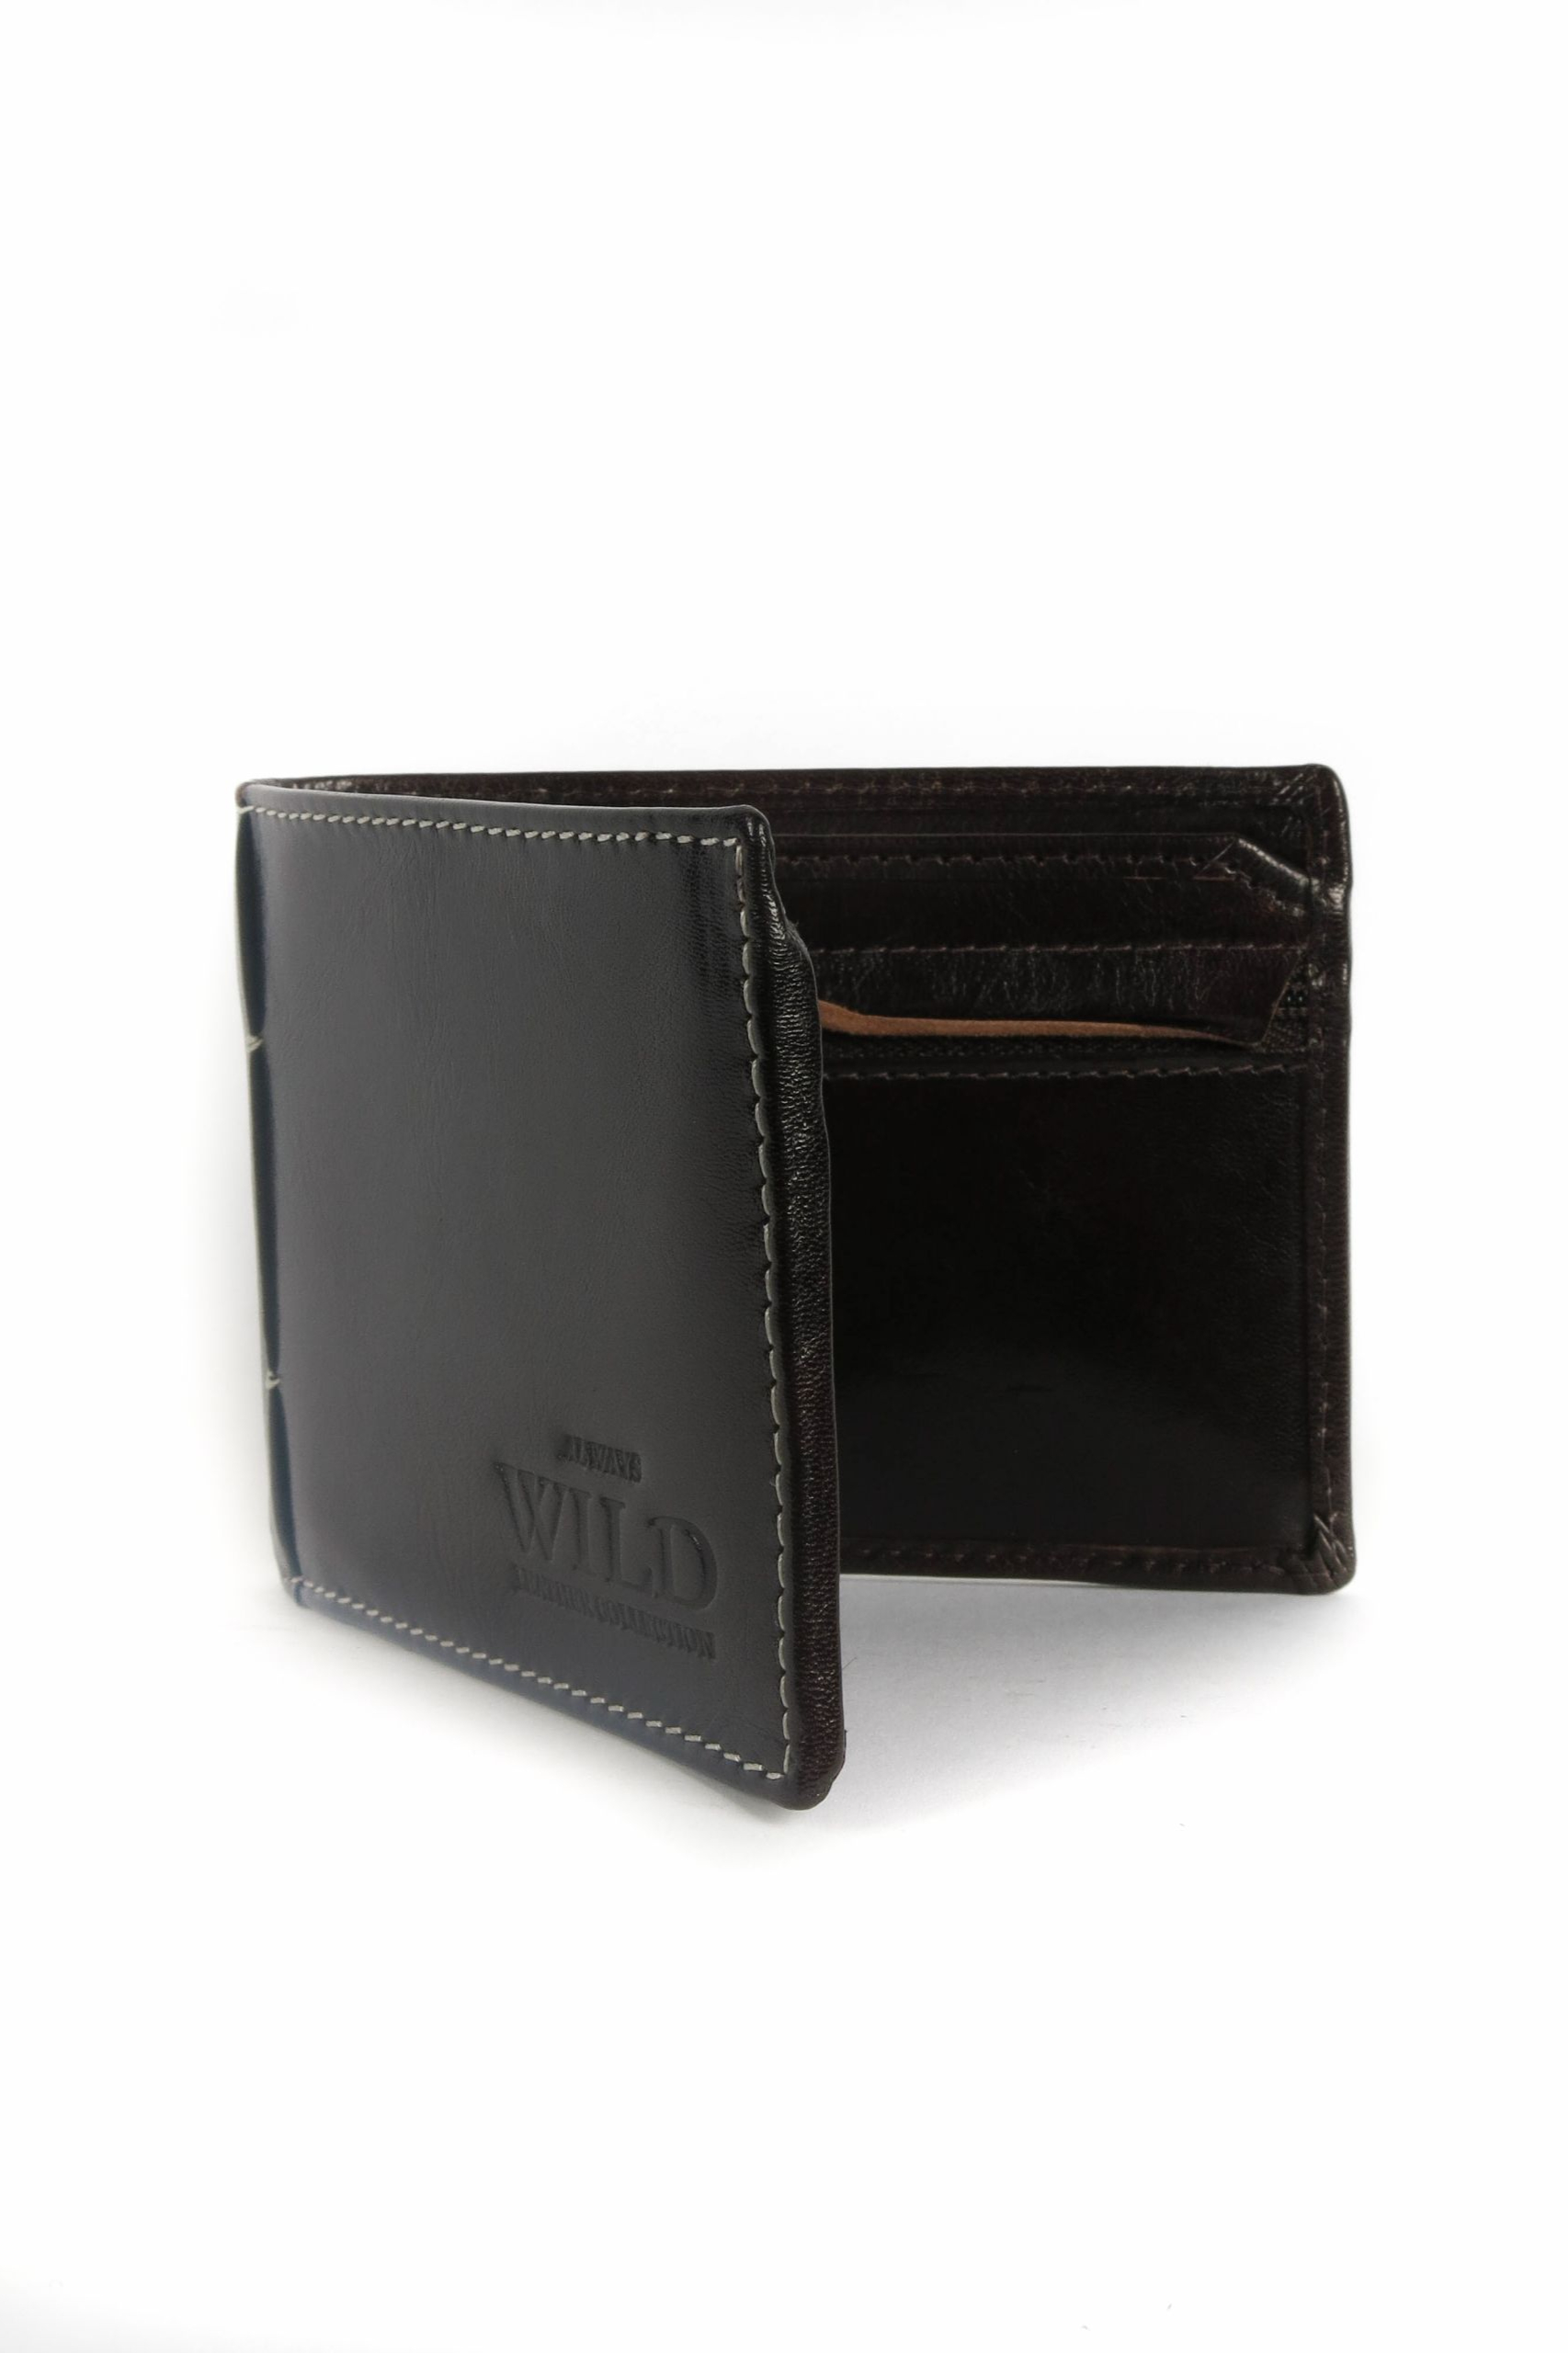 Wallet WILD N916-VTK-BROWN